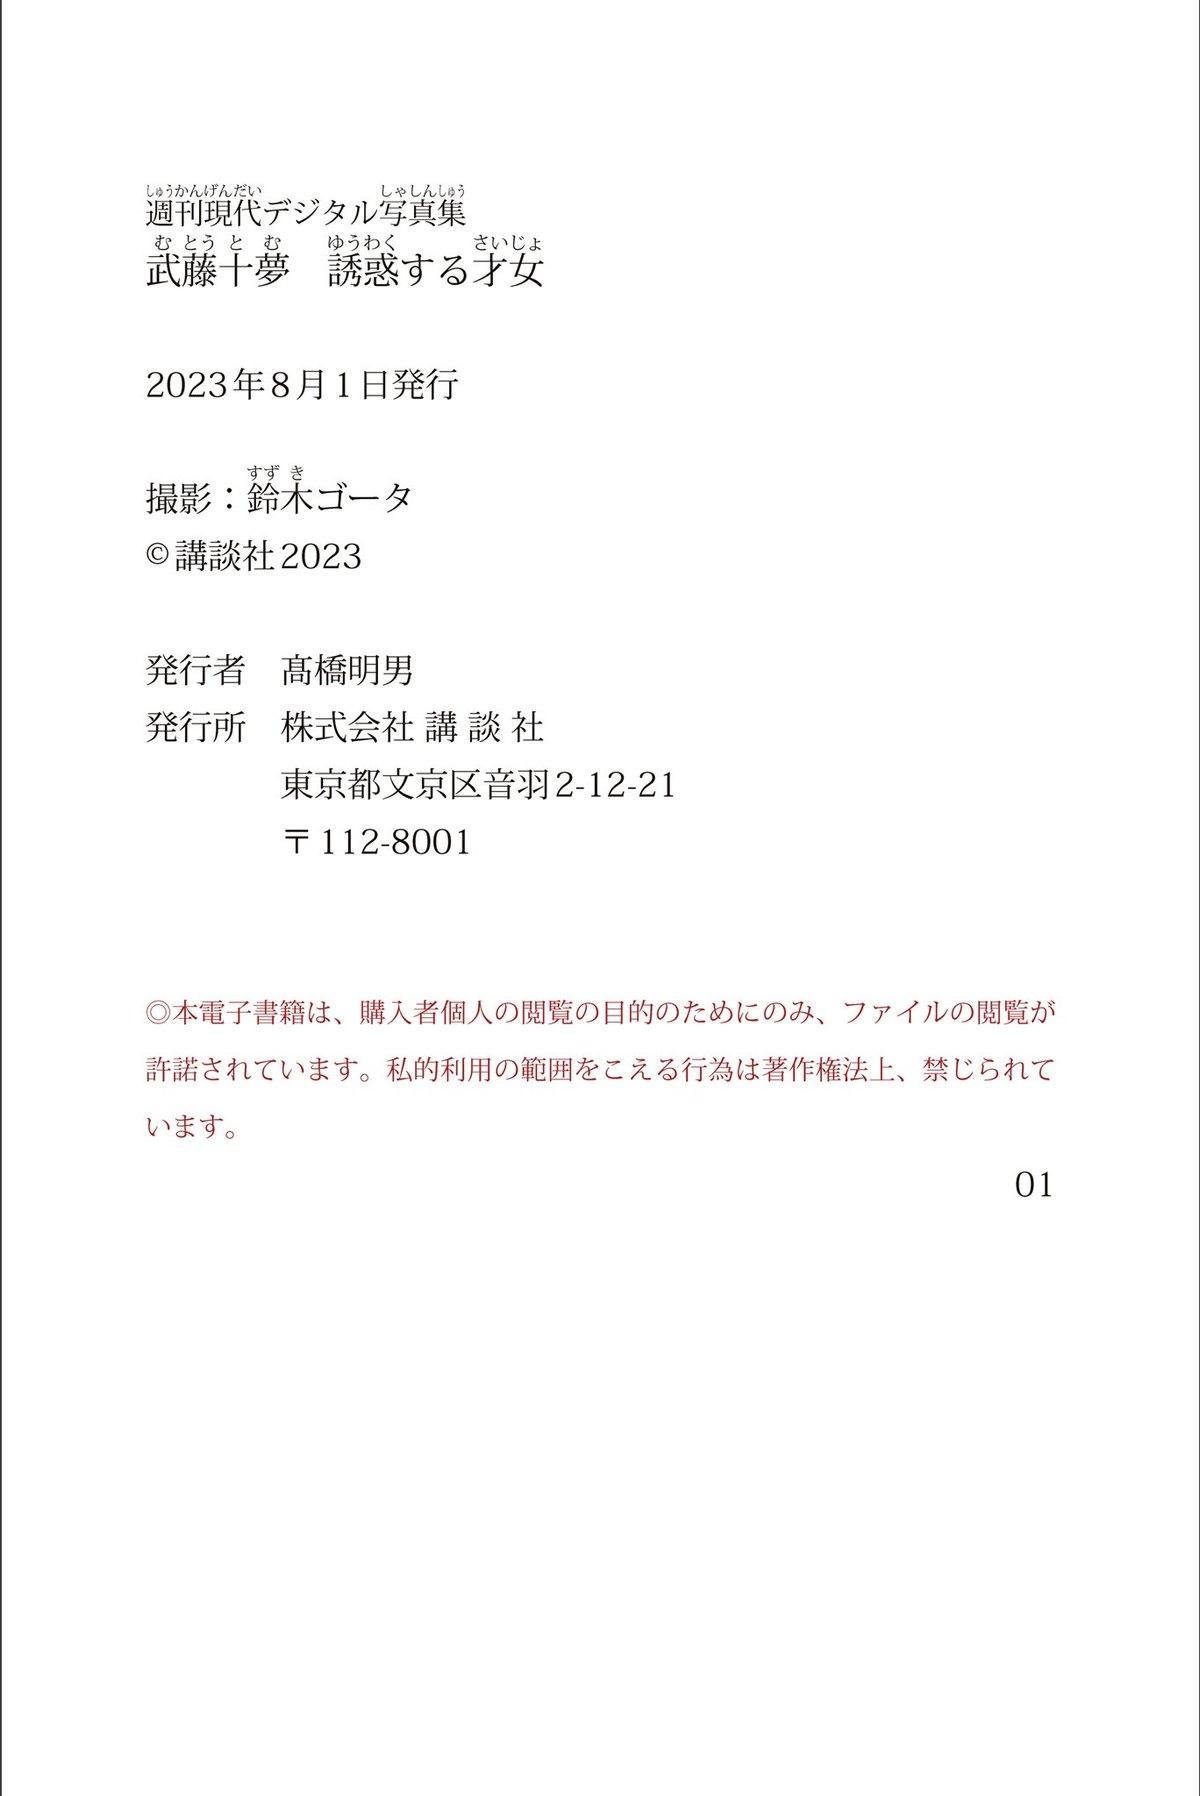 Weekly Gendai Photobook 2023 07 21 Tomu Muto 武藤十夢 Genius To Seduce B 0050 1956798545.jpg